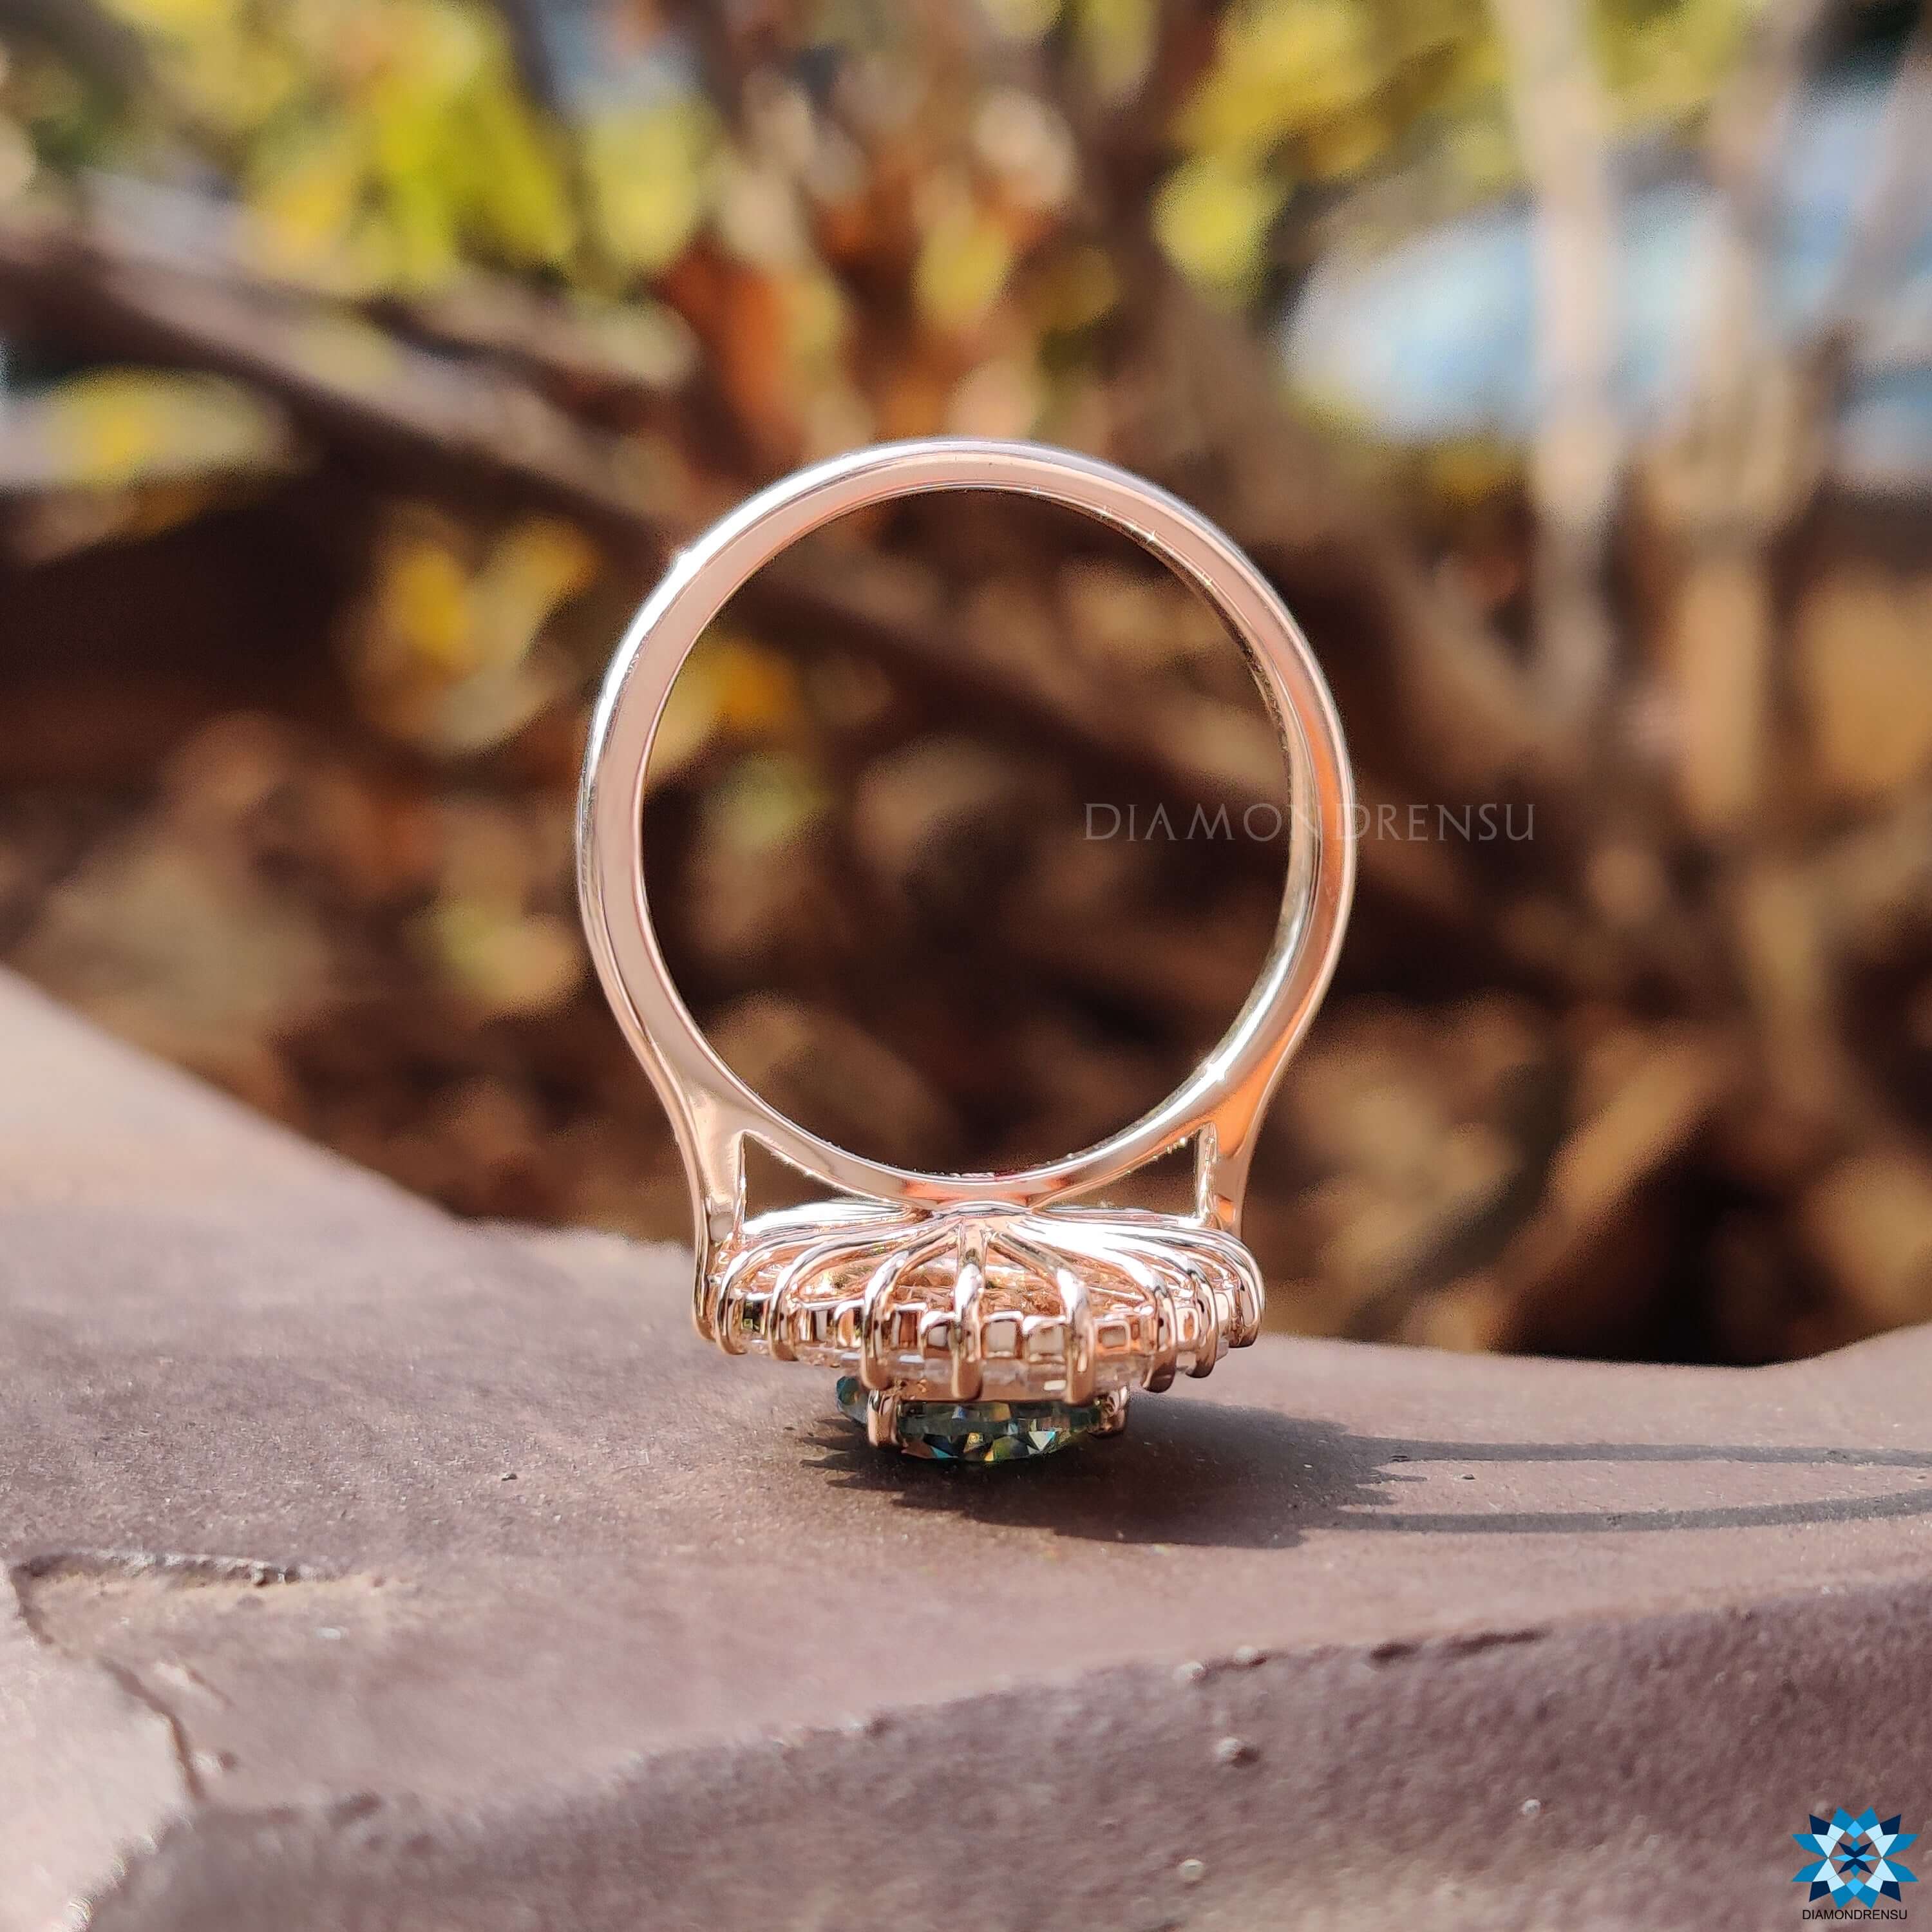 Unique Vintage Moissanite Engagement Ring, Cyan Blue Pear Cut Antique Halo Moissanite Ring